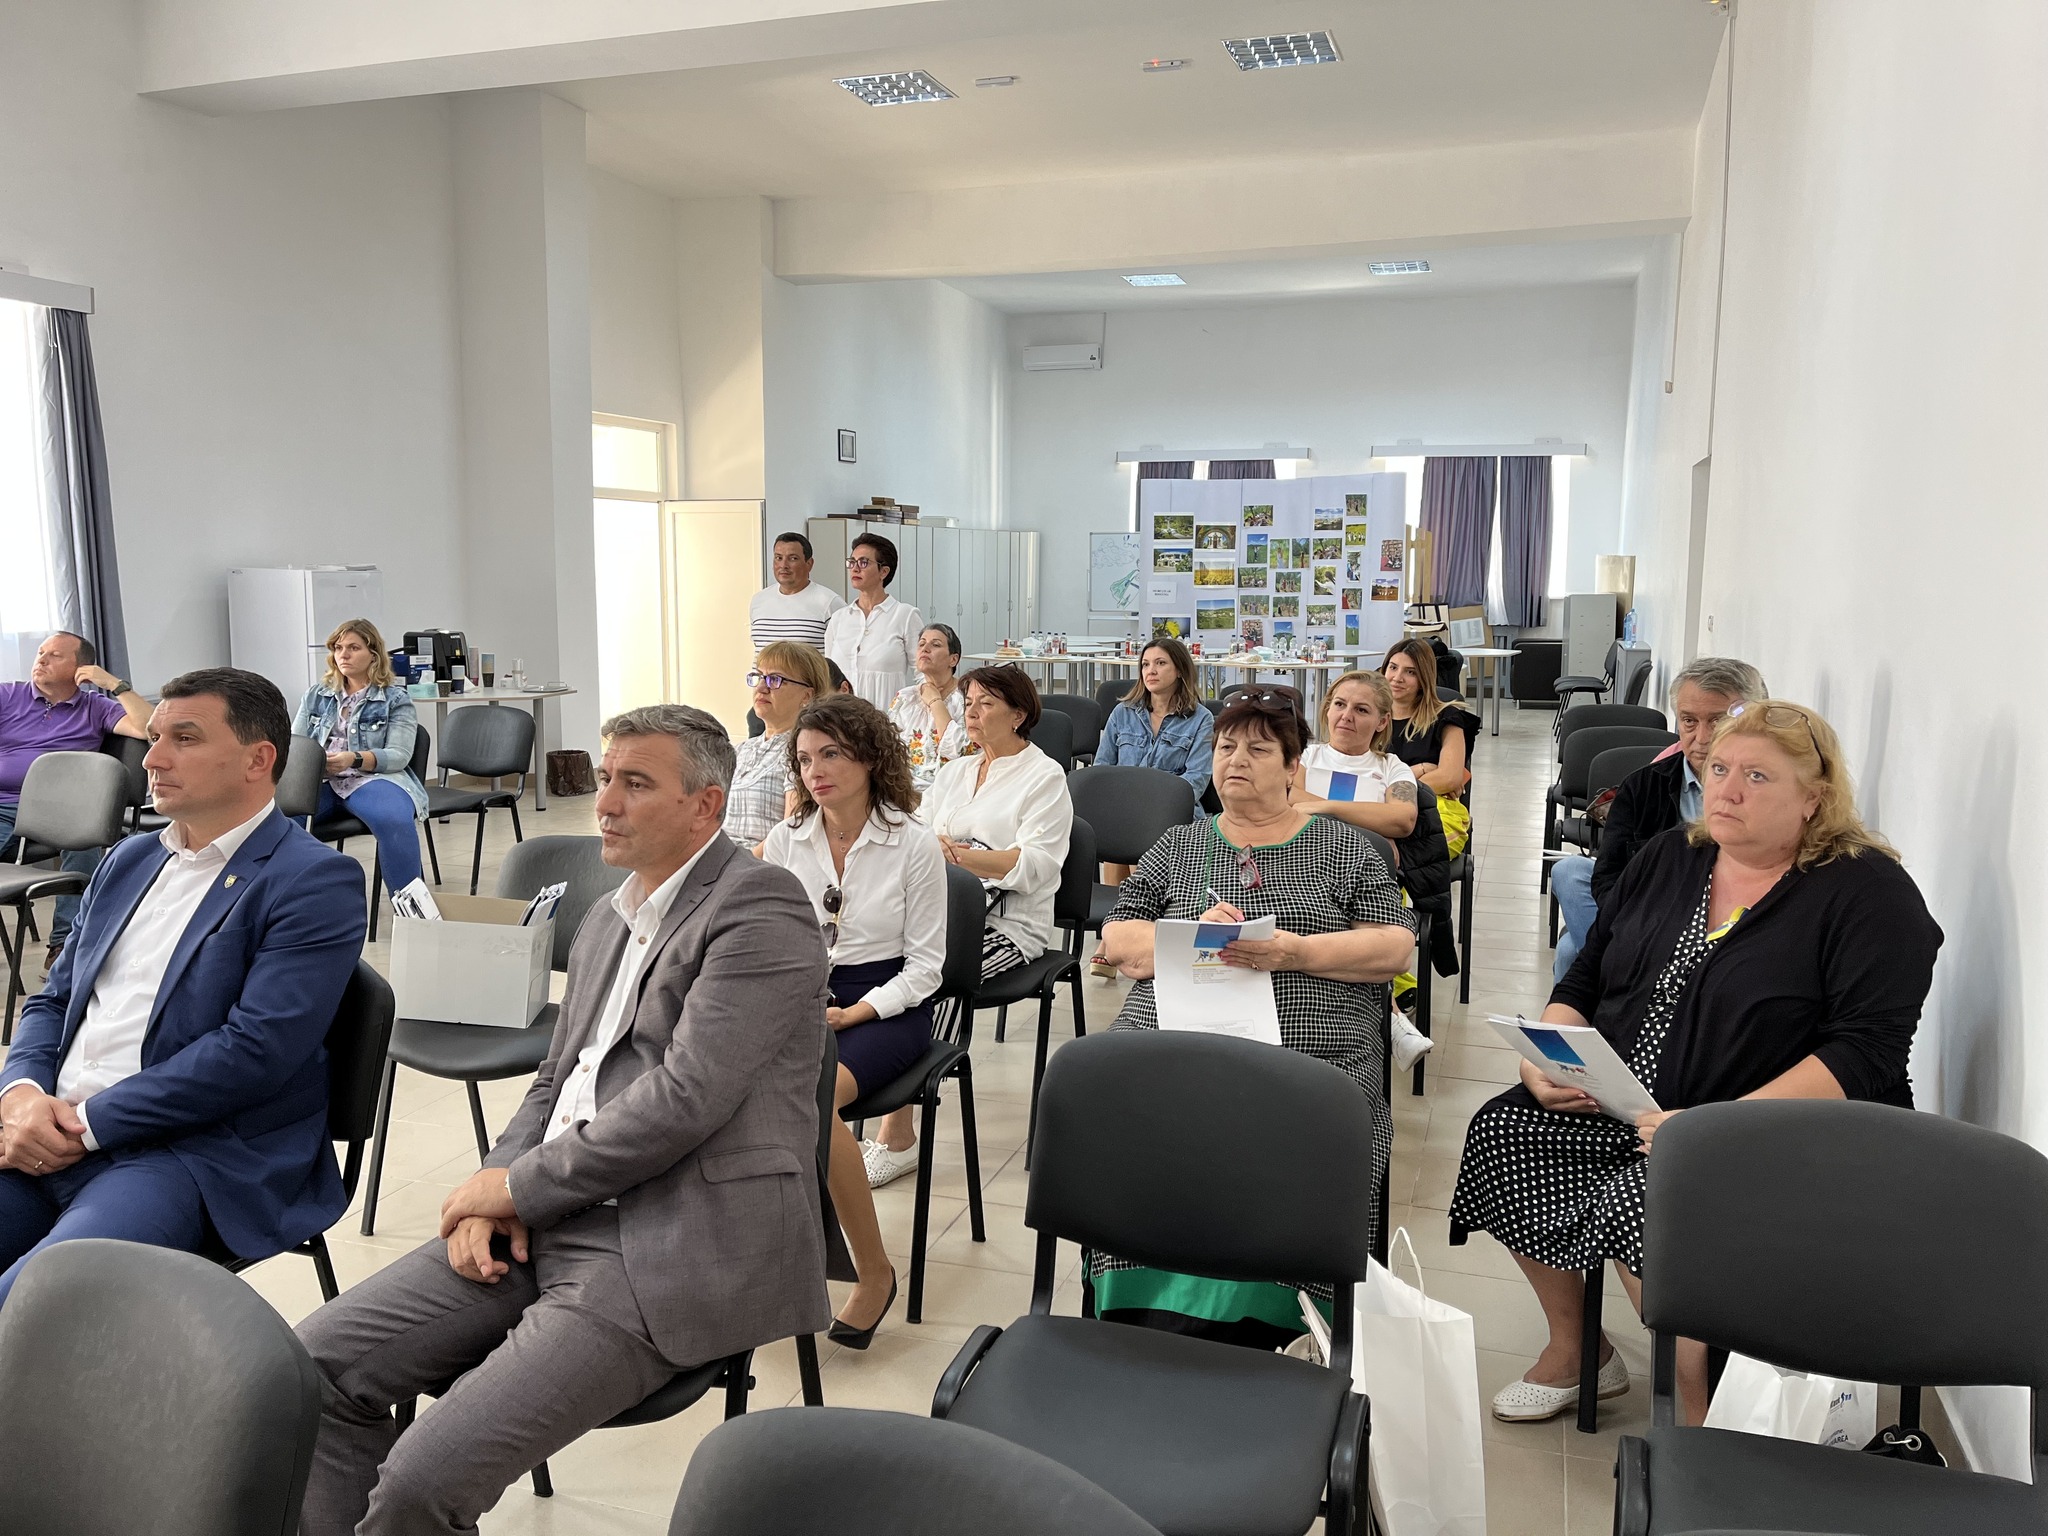 Болградці взяли участь у важливому для туризму міжнародному бізнес-форумі, який проходив в Румунії - що це значить для міста